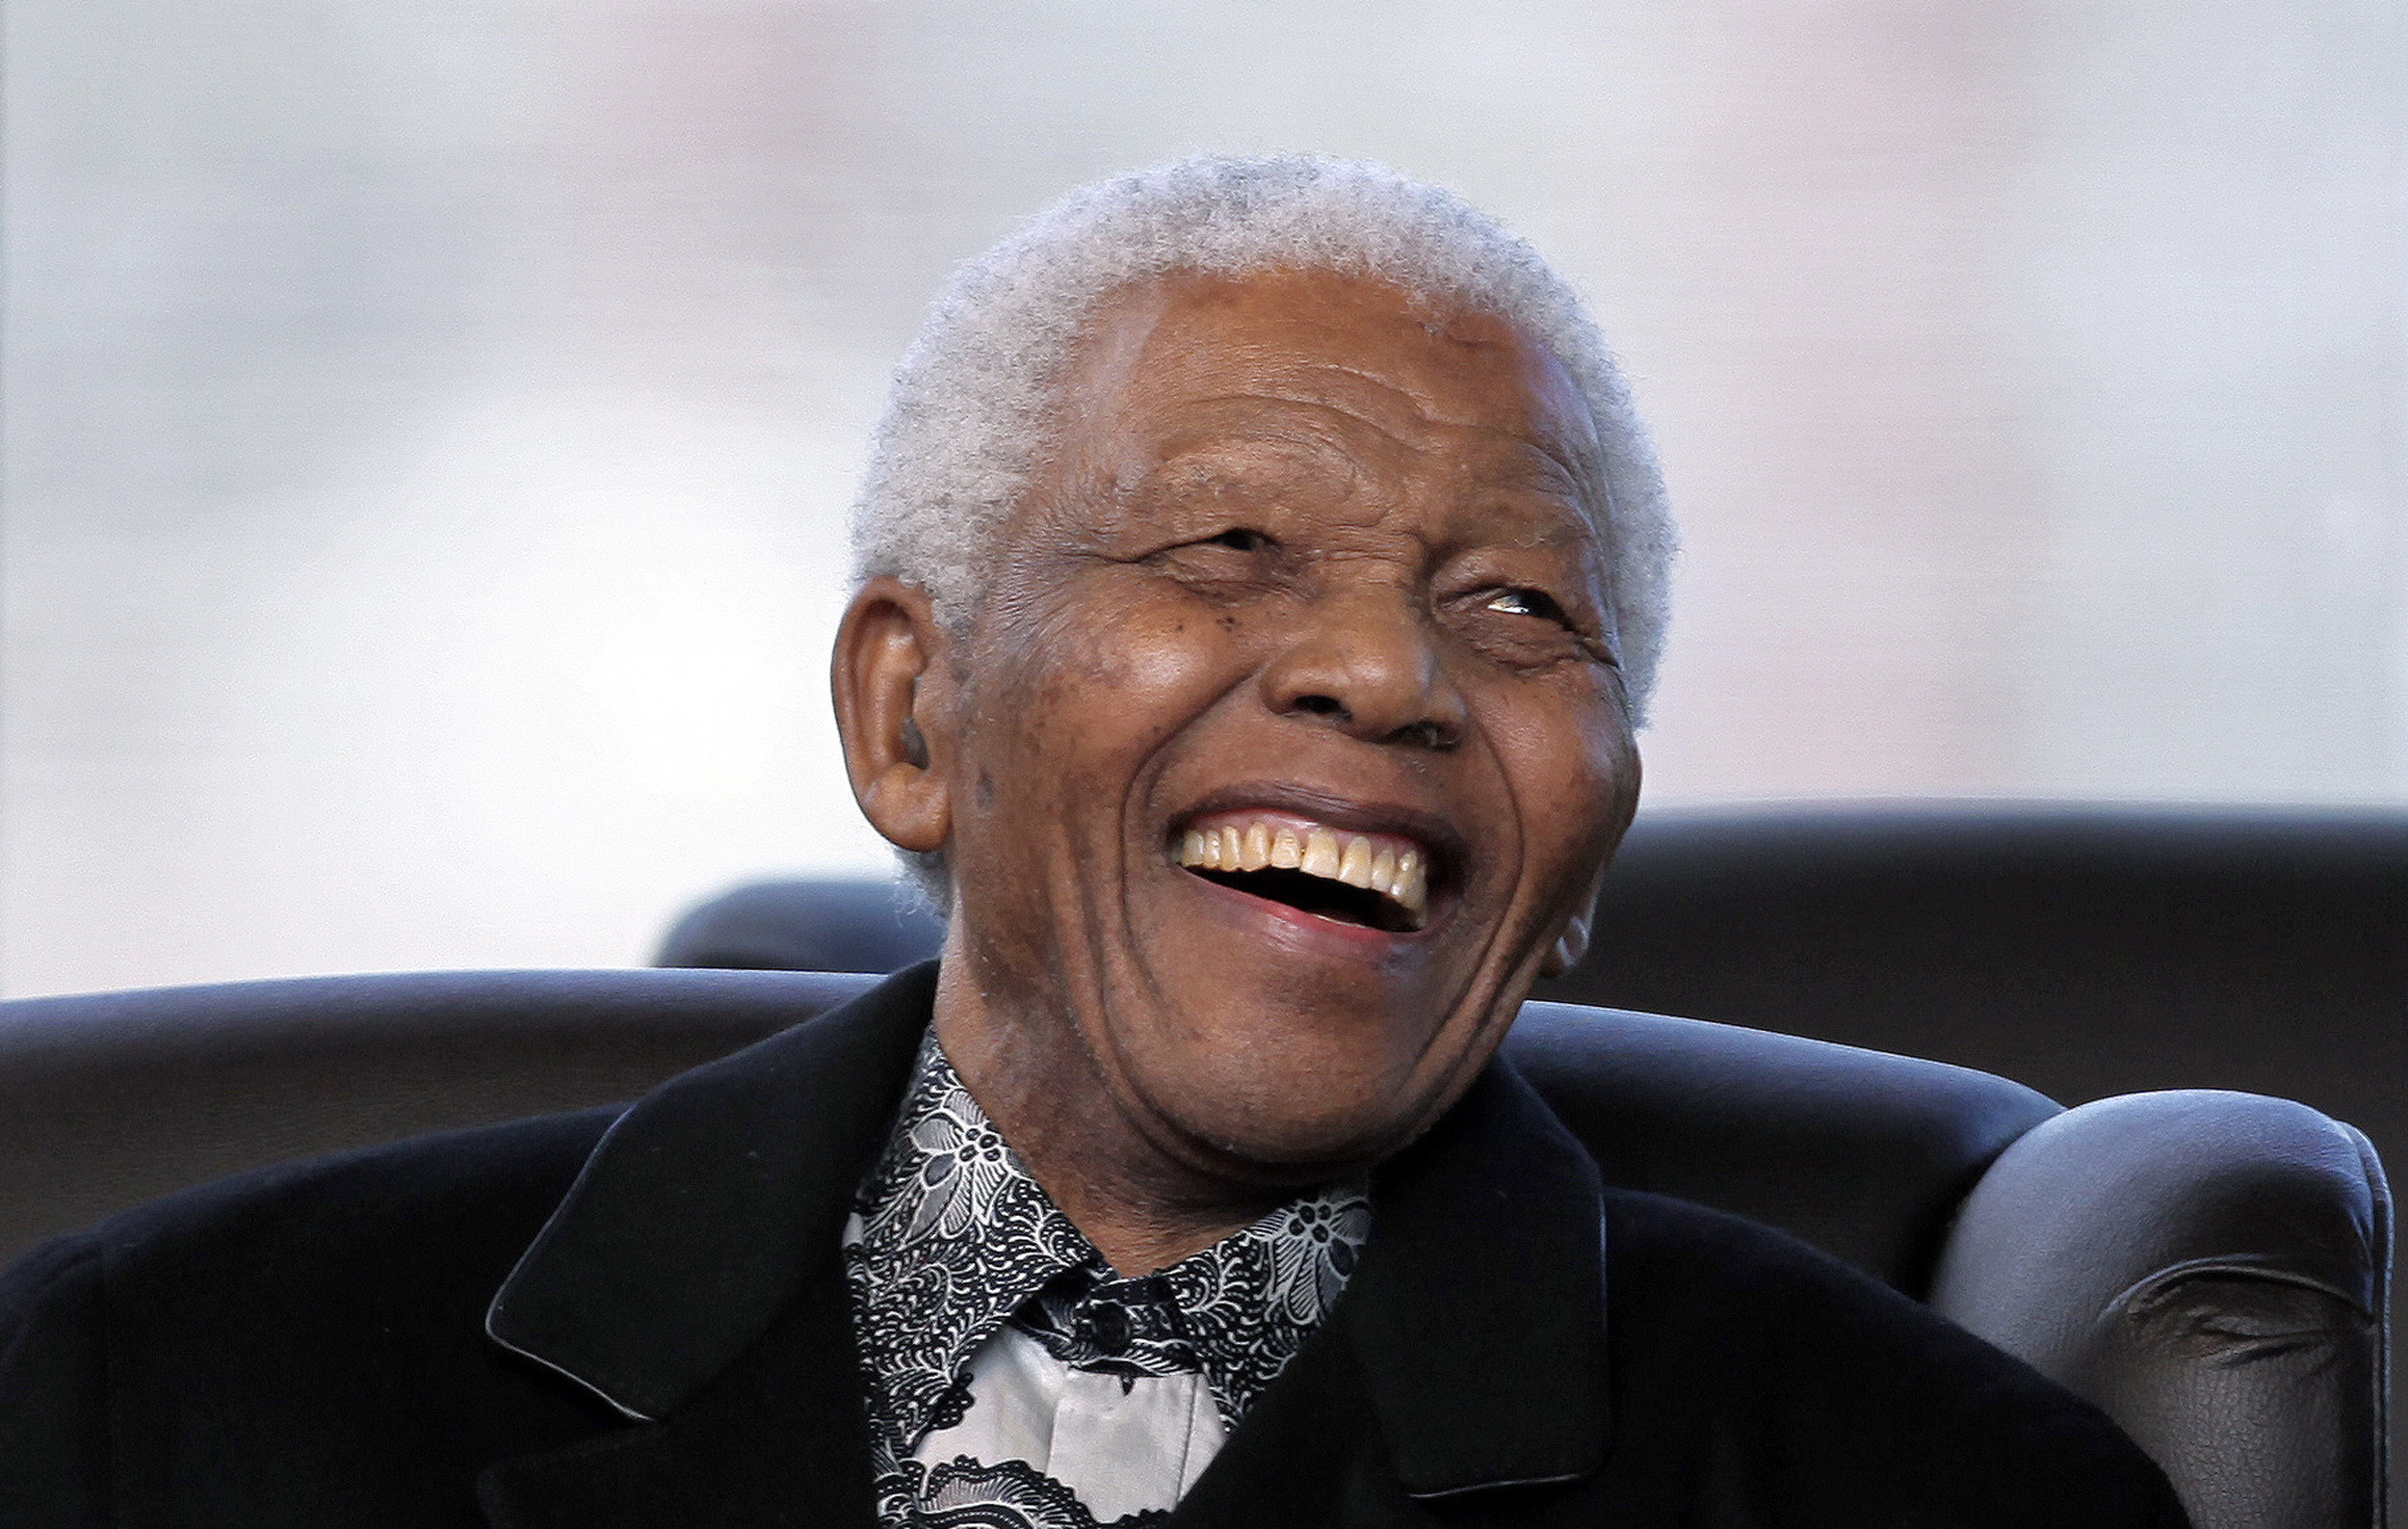 Nelson Mandela slogs för ett fritt Sydafrika utan apartheid, men fänglsades av den brittiska regimen. Efter stor internationella påtryckningar frigavs Mandela 1990. 1994 valdes han till Sydafrikas president. 